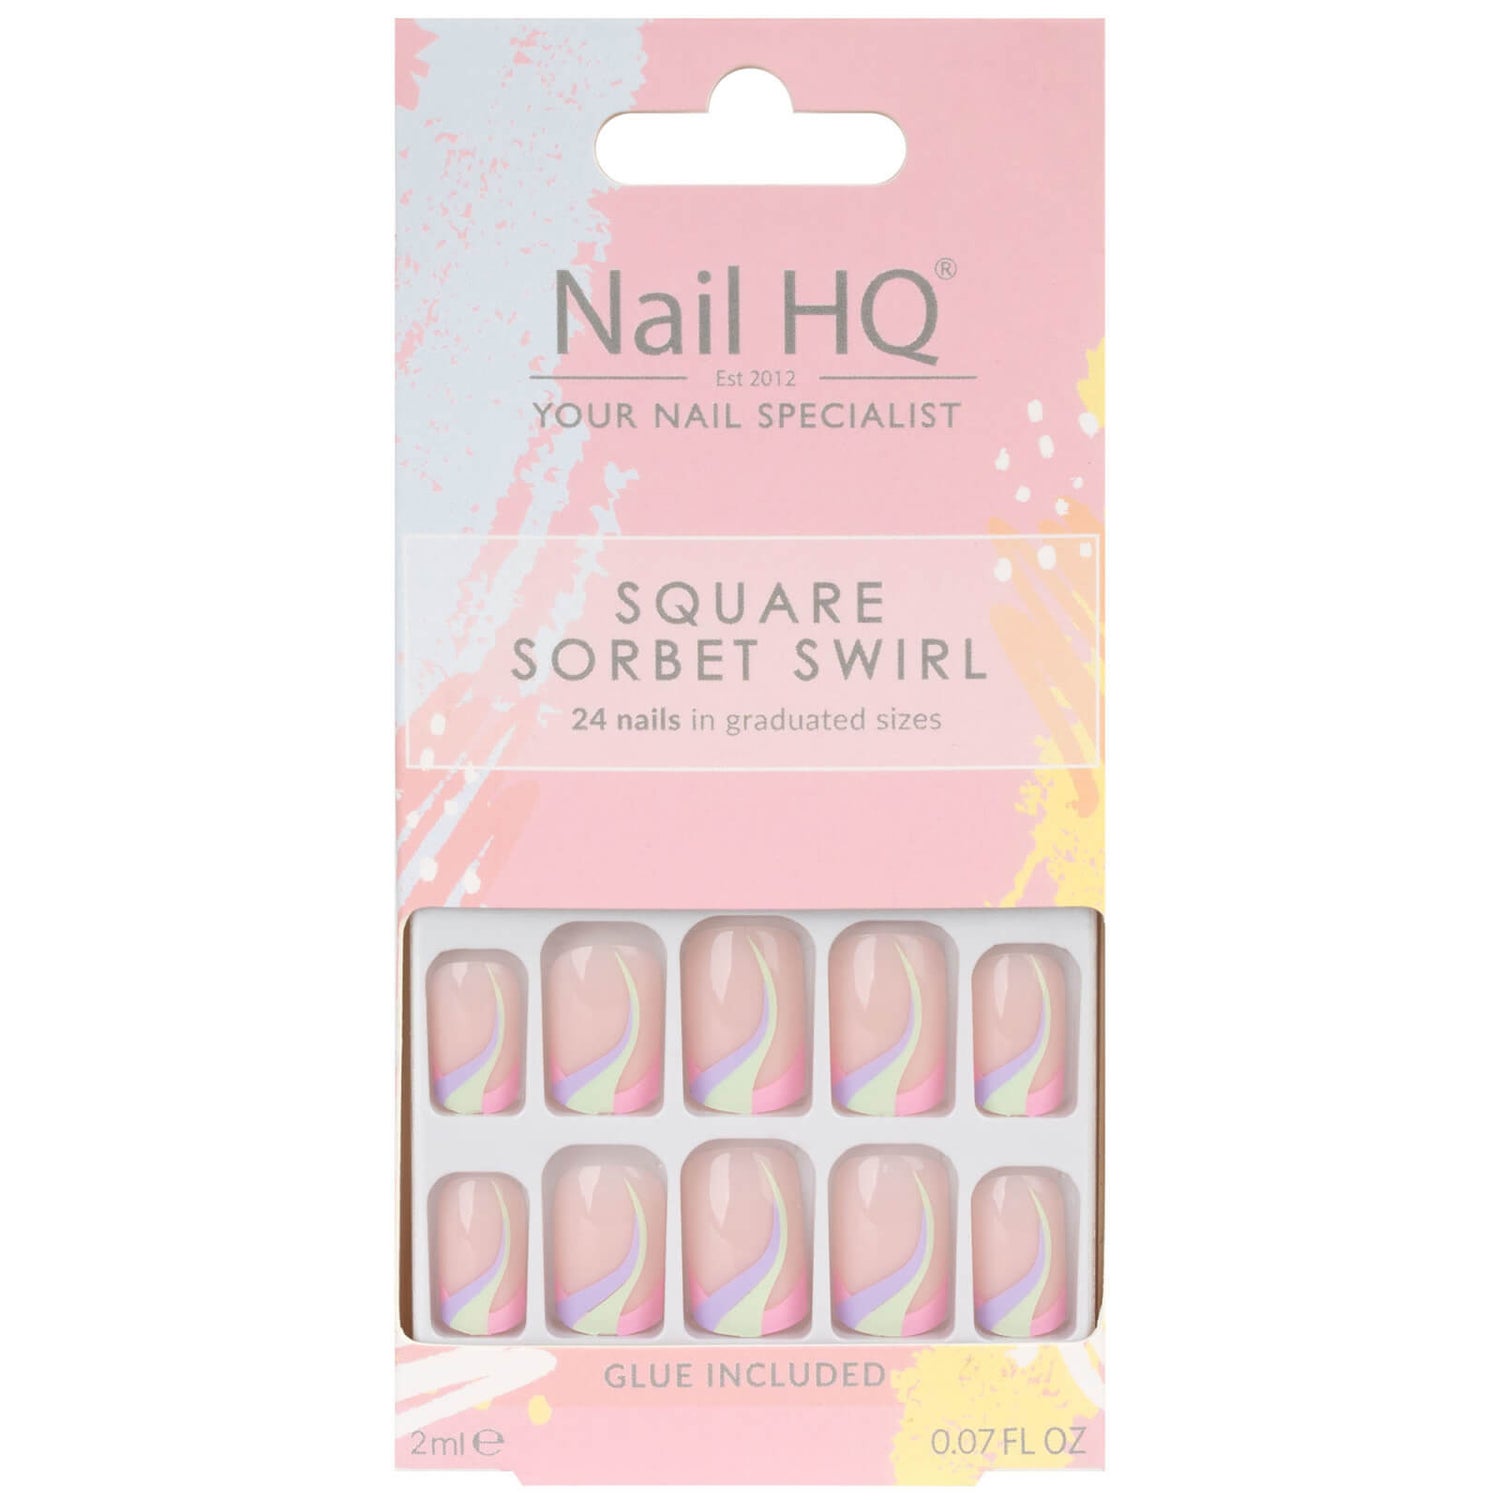 Nail HQ Square Sorbet Swirl False Nails